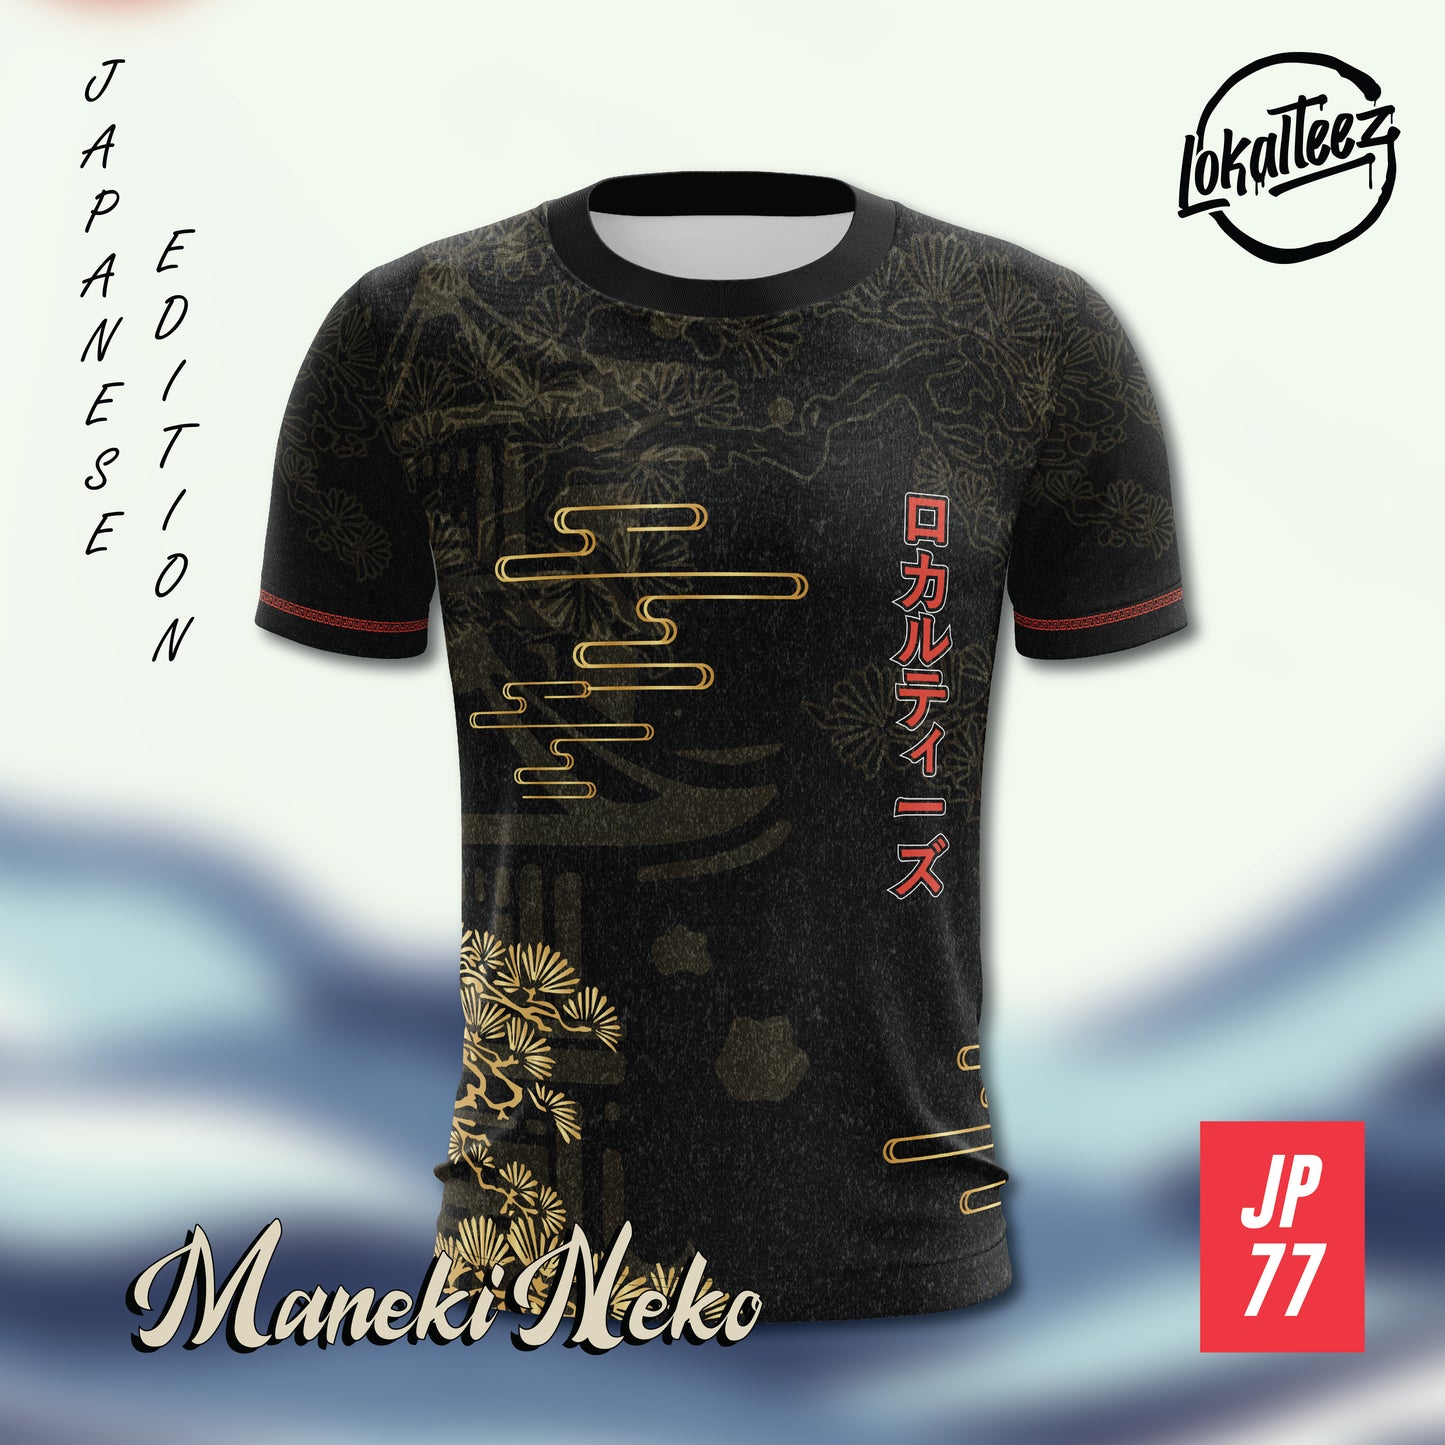 LOKALTEEZ JP77 Japanese NIHON Edition MANEKI-NEKO 150GSM MICROFIBER EYELET JERSEY